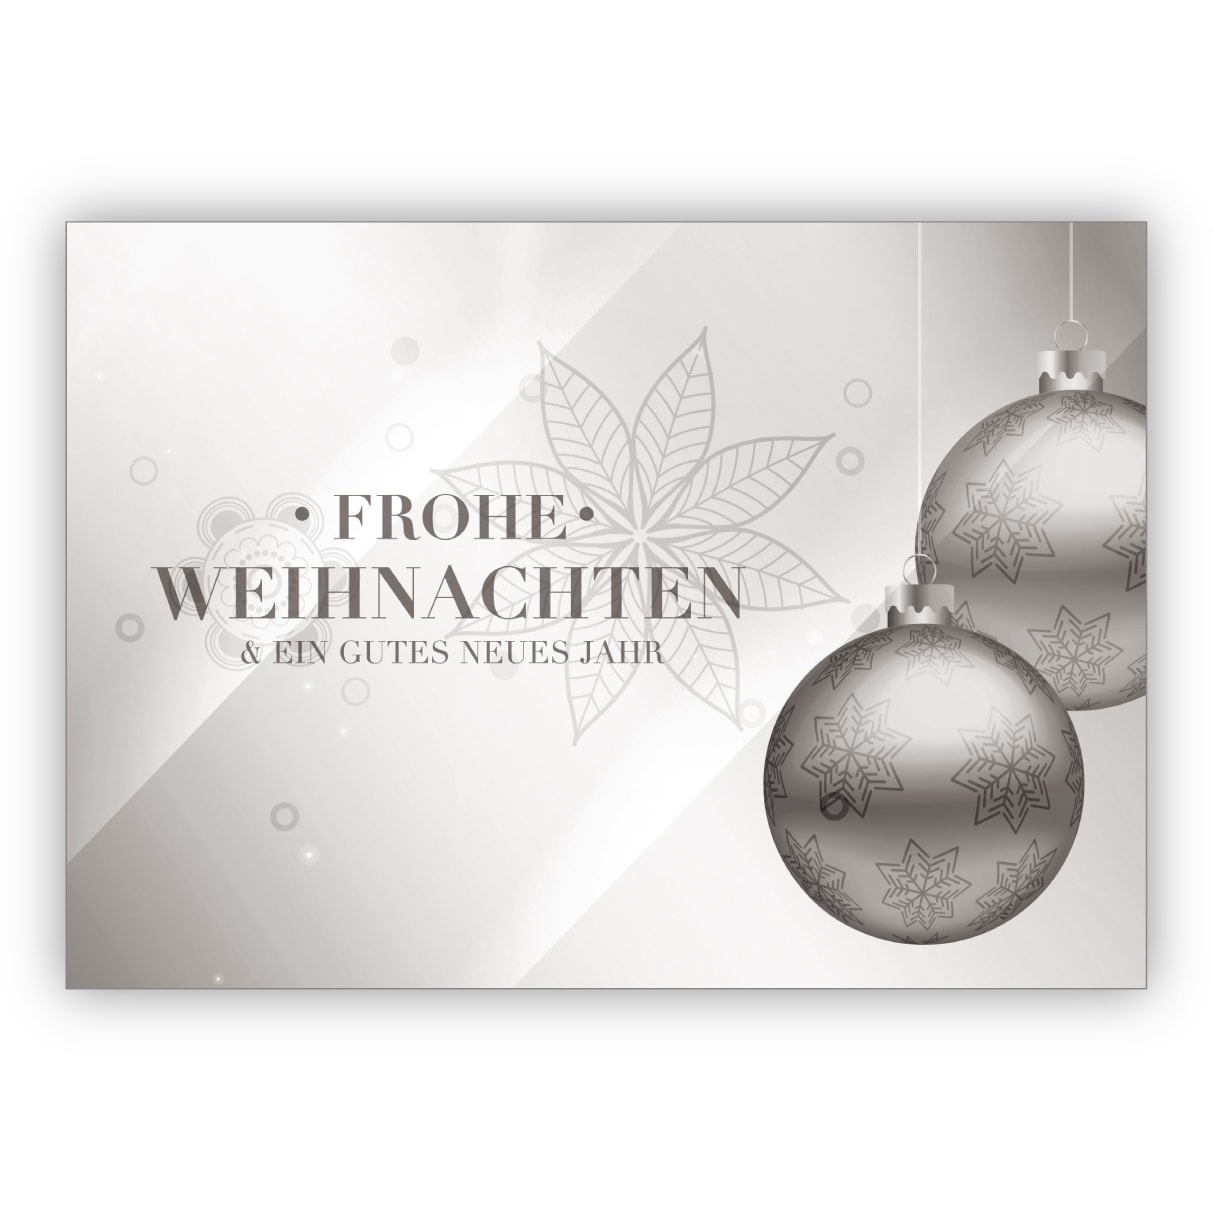 Klassische edle Weihnachtskarte mit Weihnachtskugeln in silber Optik: Frohe Weihnachten und ein gutes neues Jahr